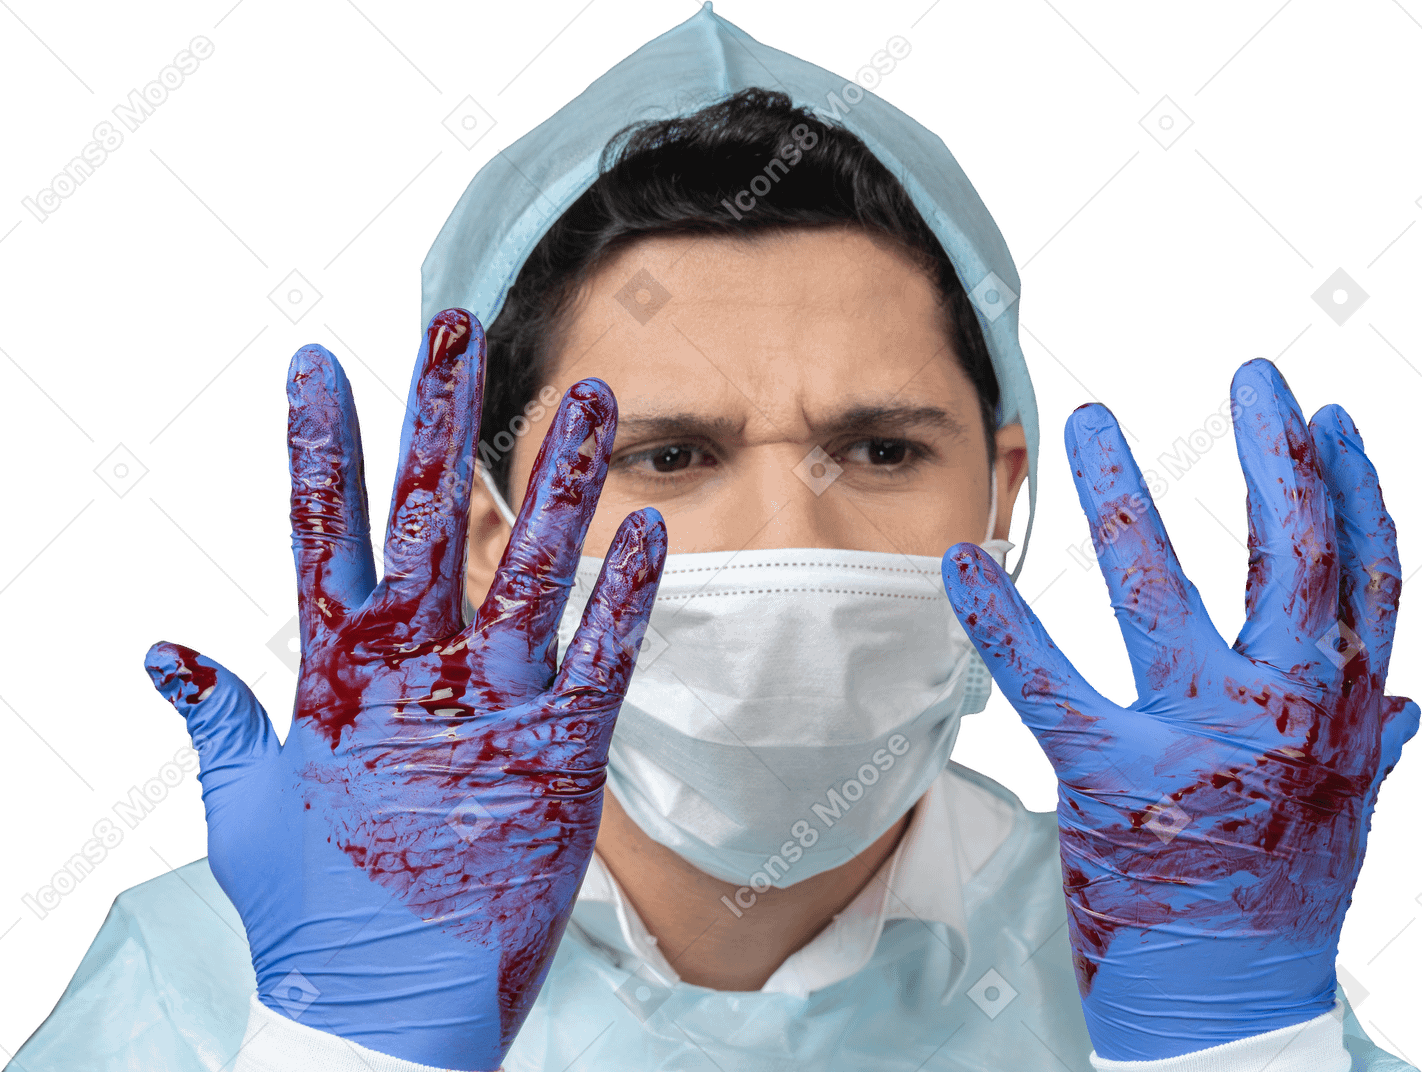 피에 뒤덮인 손을 바라보는 의사